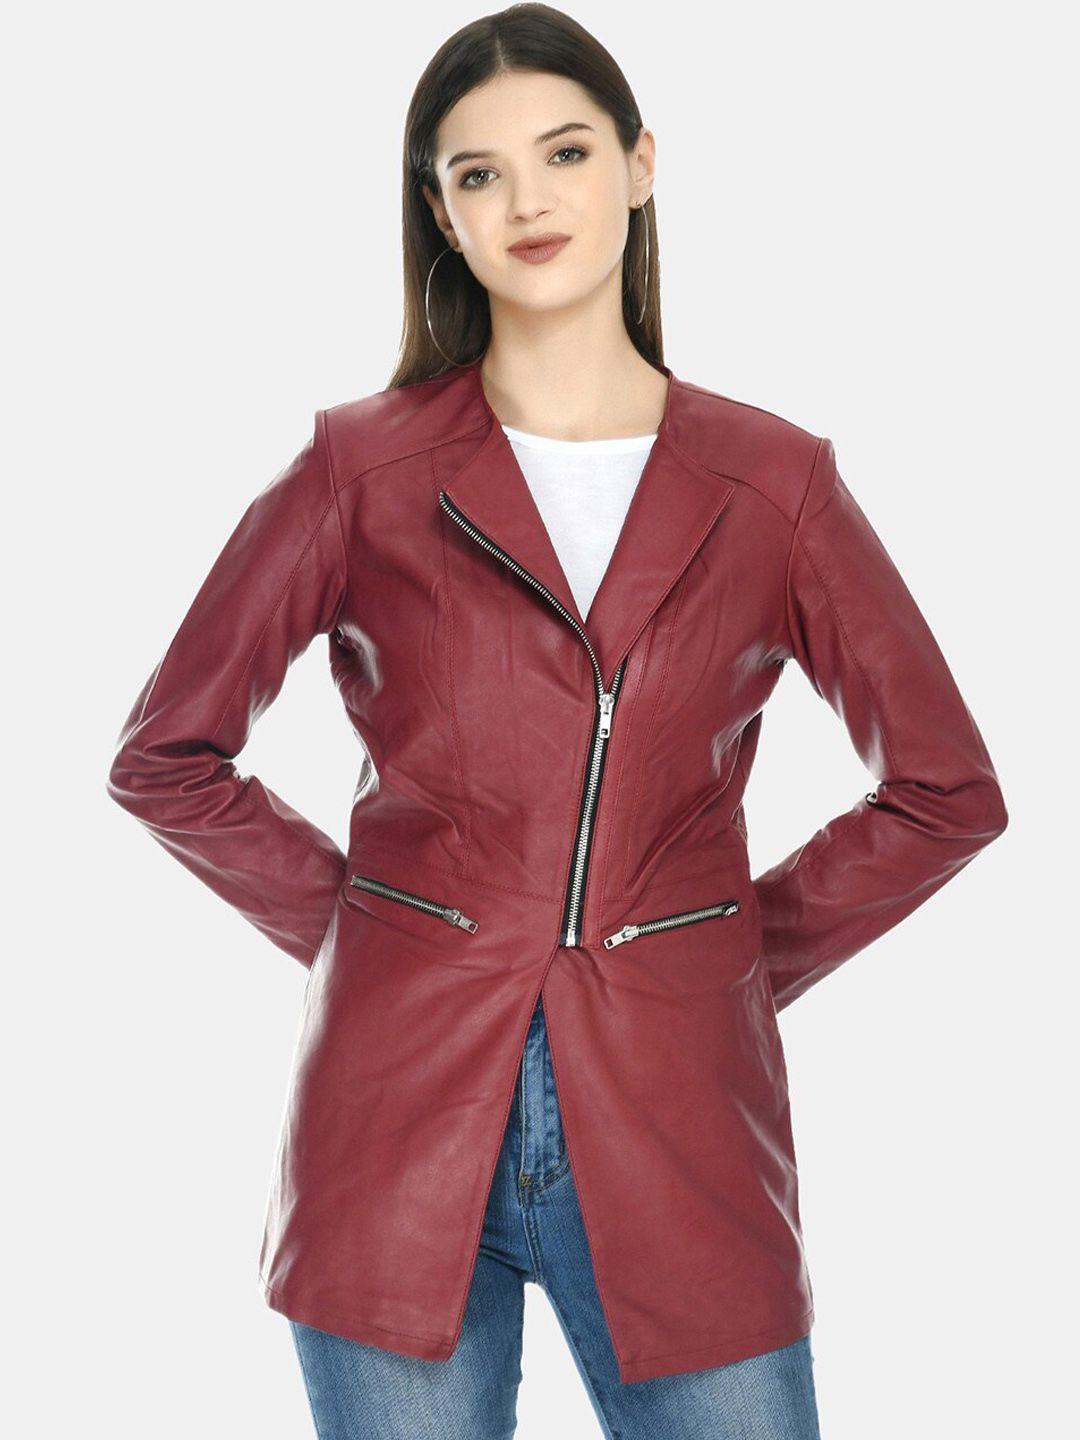 tboj women maroon leather lightweight longline open front jacket